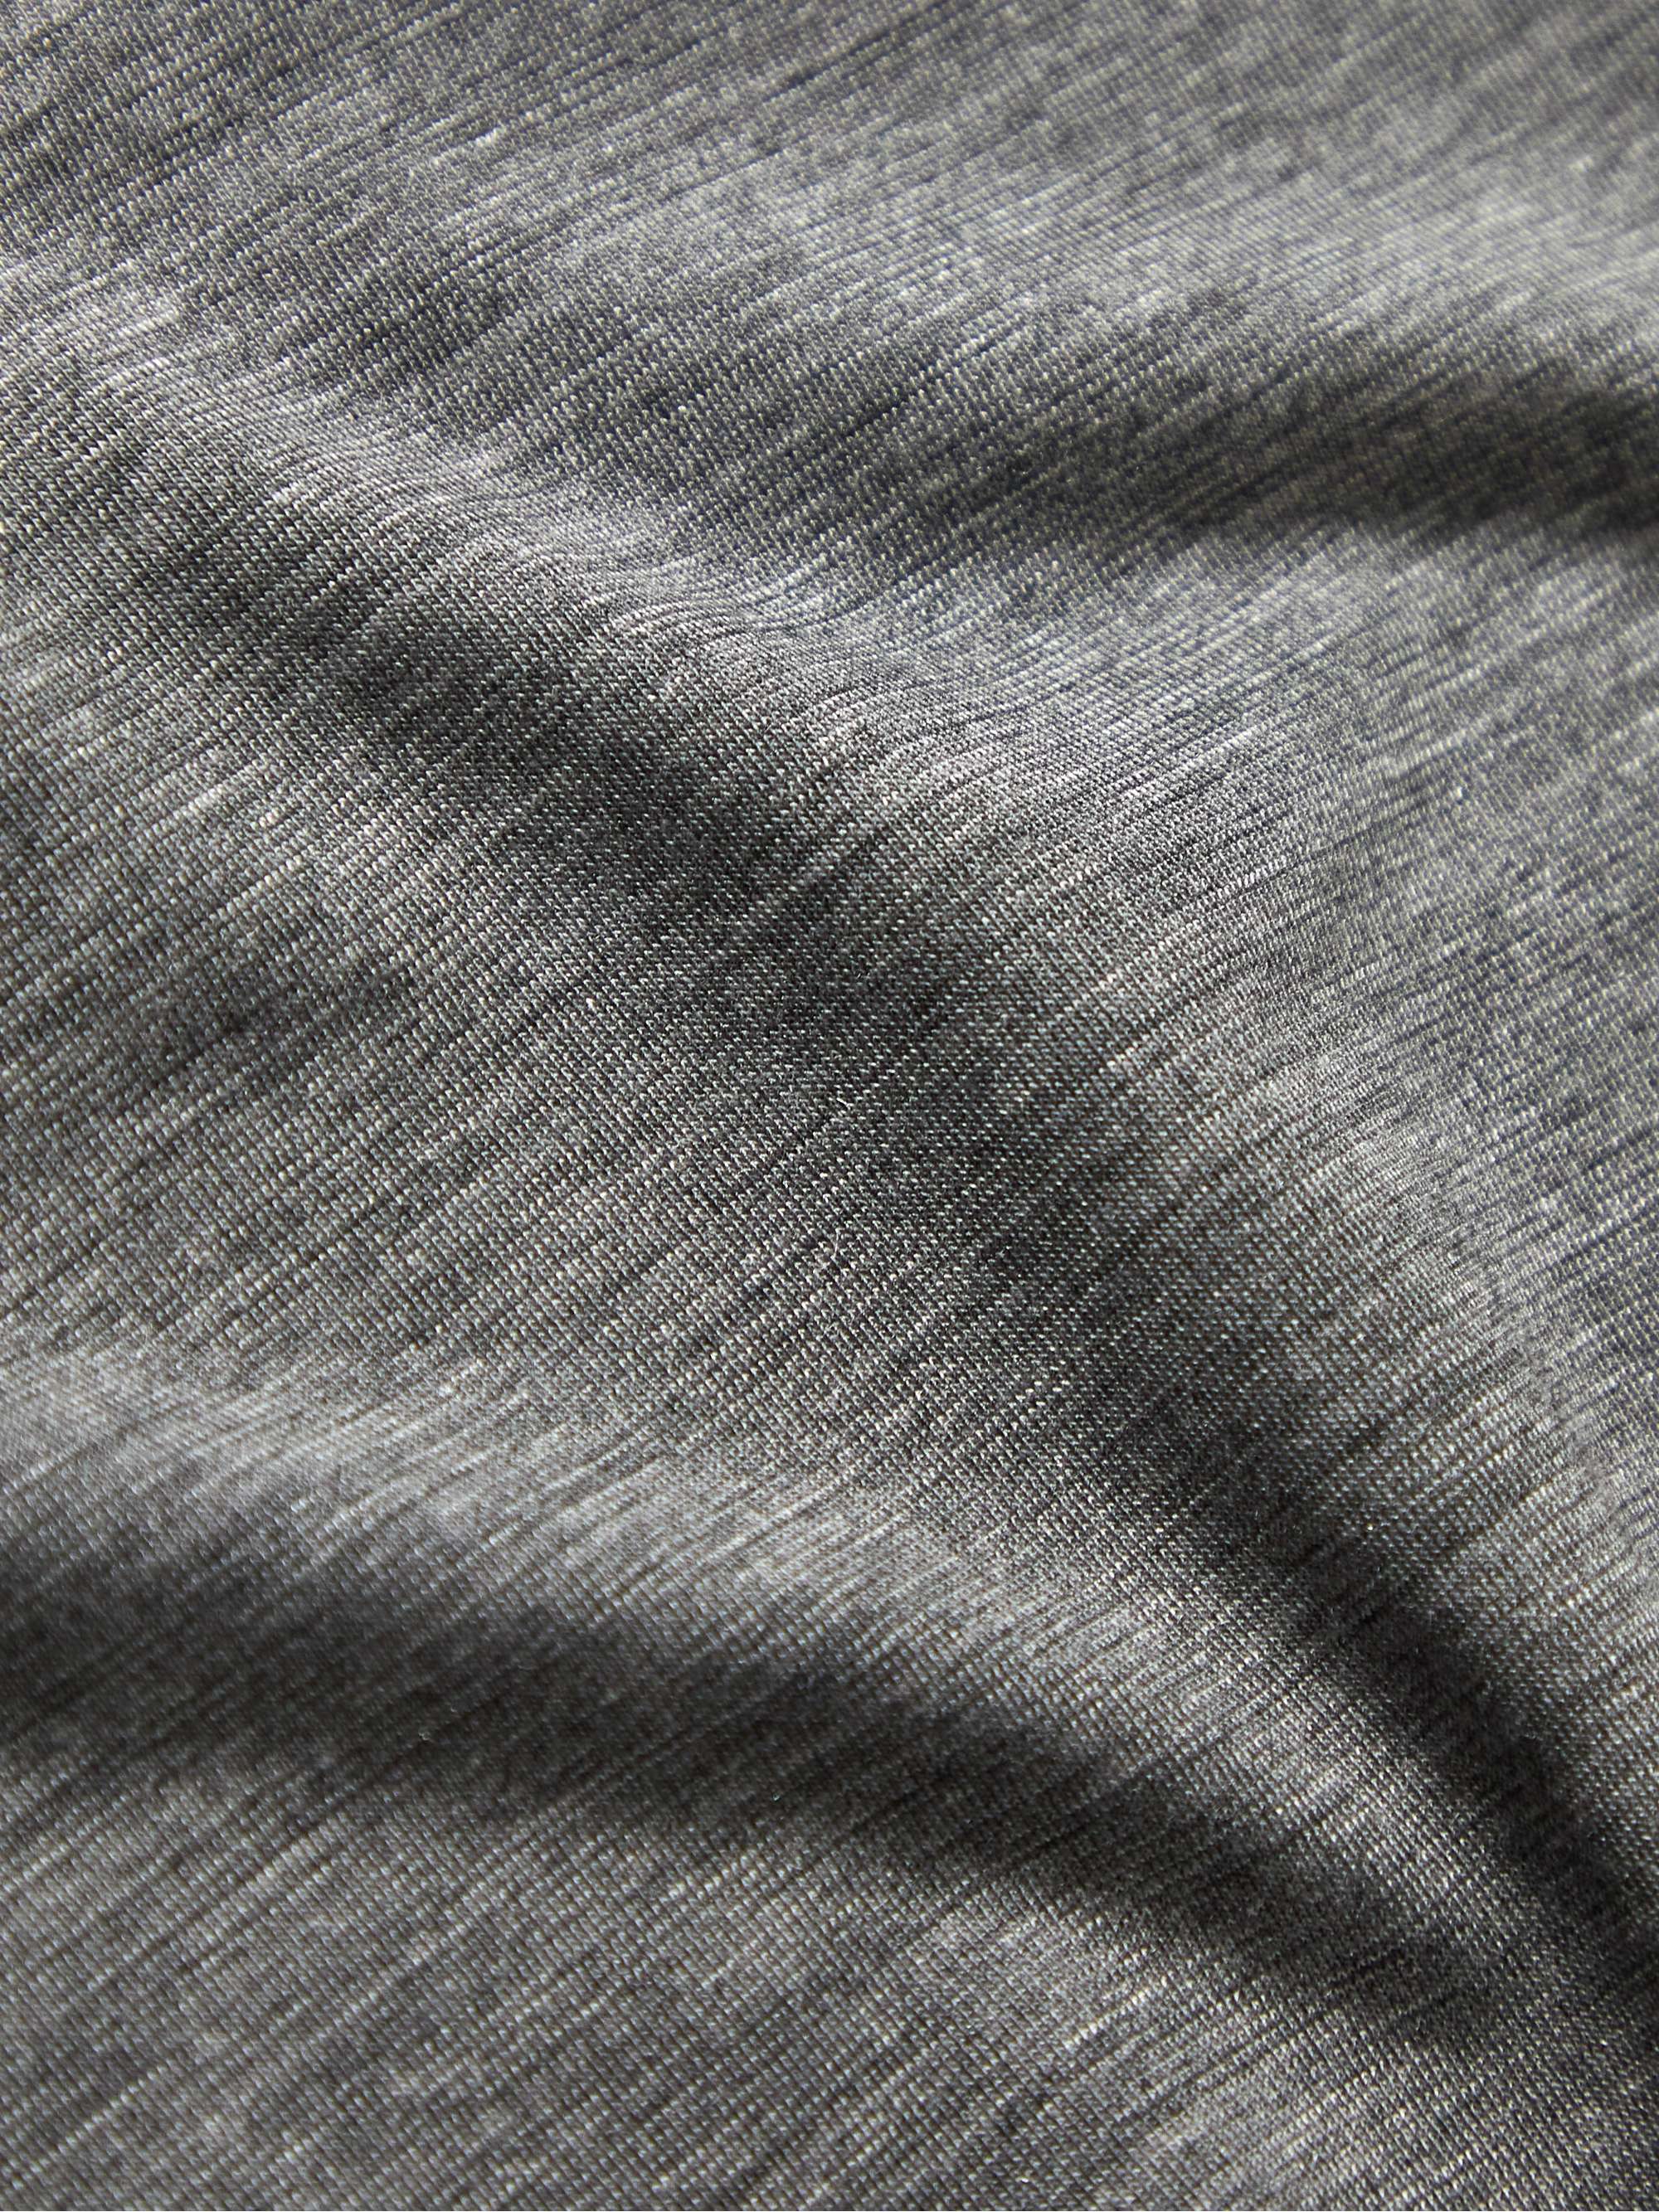 LARDINI Wool and Lyocell-Blend Jersey T-Shirt